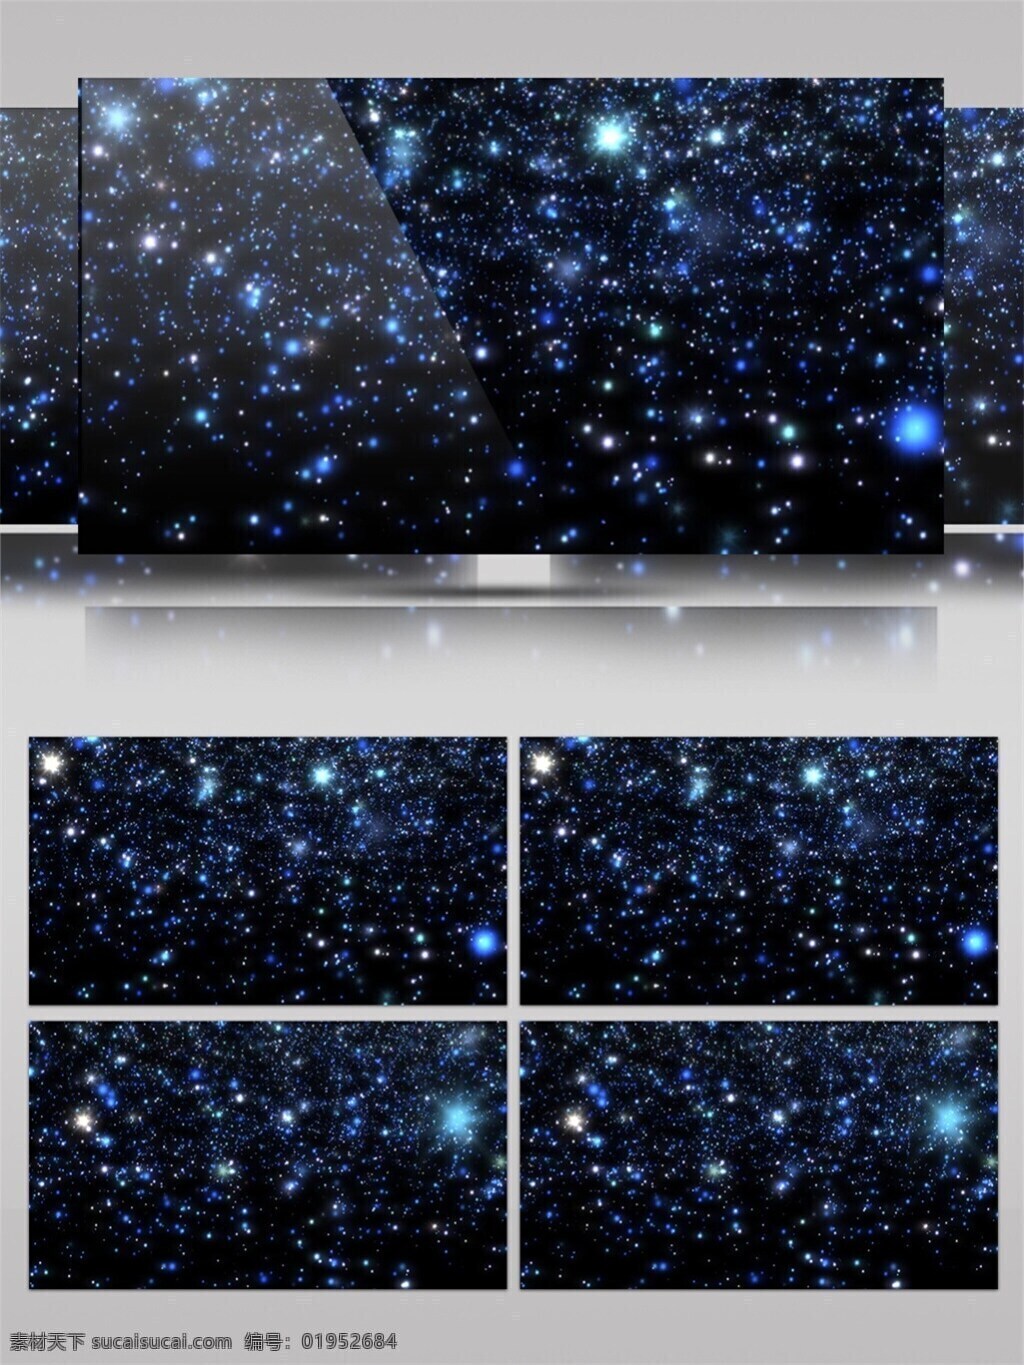 酒吧 夜空 高清 视频 3d视频素材 酒吧舞台 蓝色 特效 光 晚会舞台背景 星空 渲染灯光 宇宙